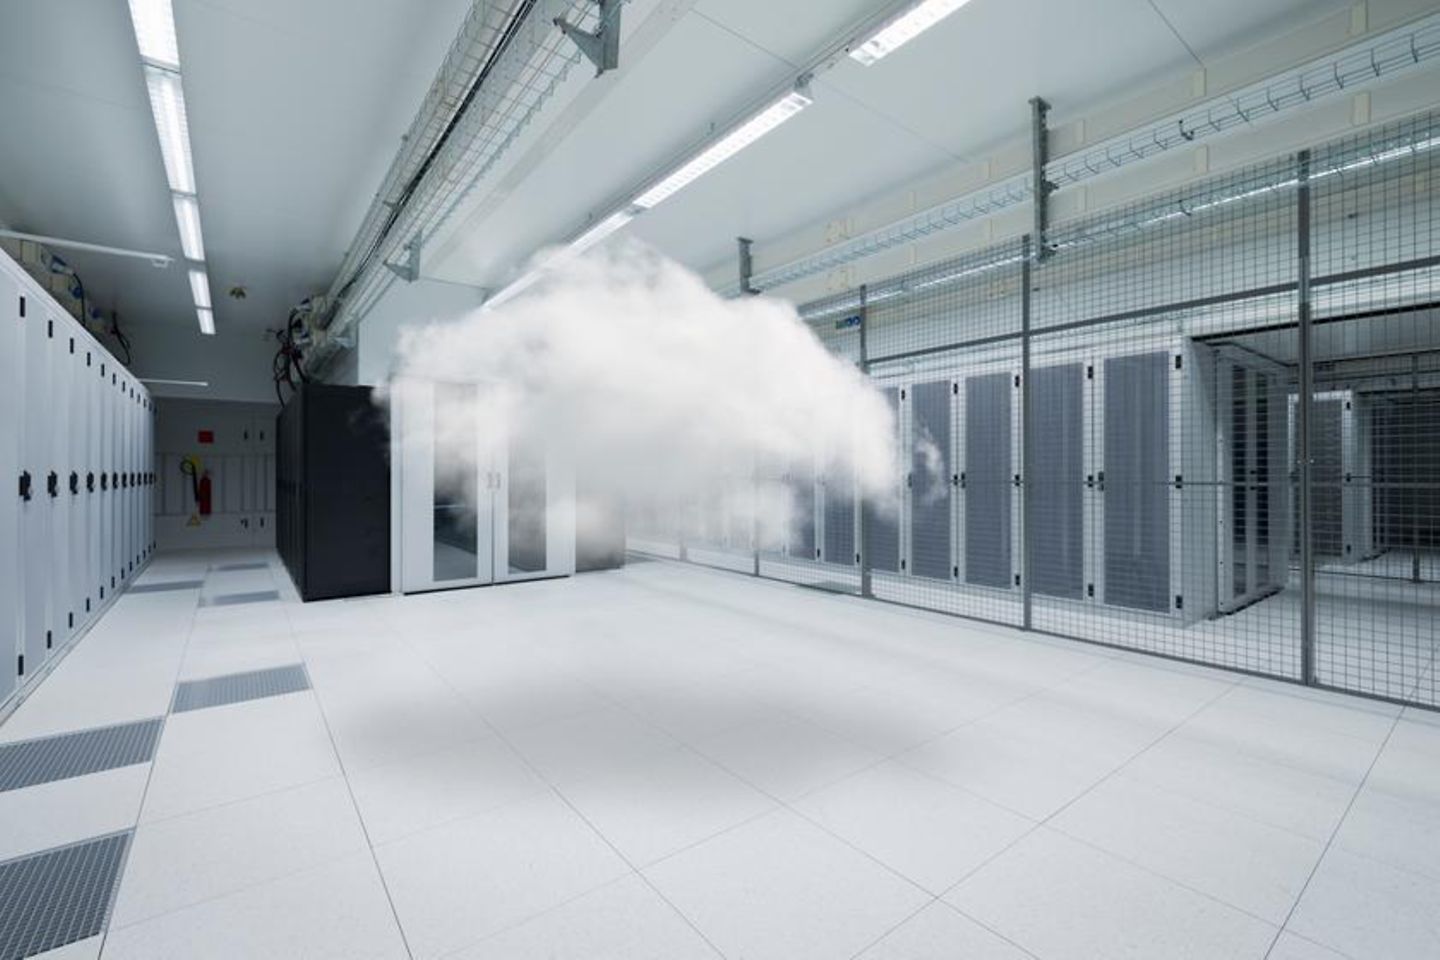 Clouds in a server basement